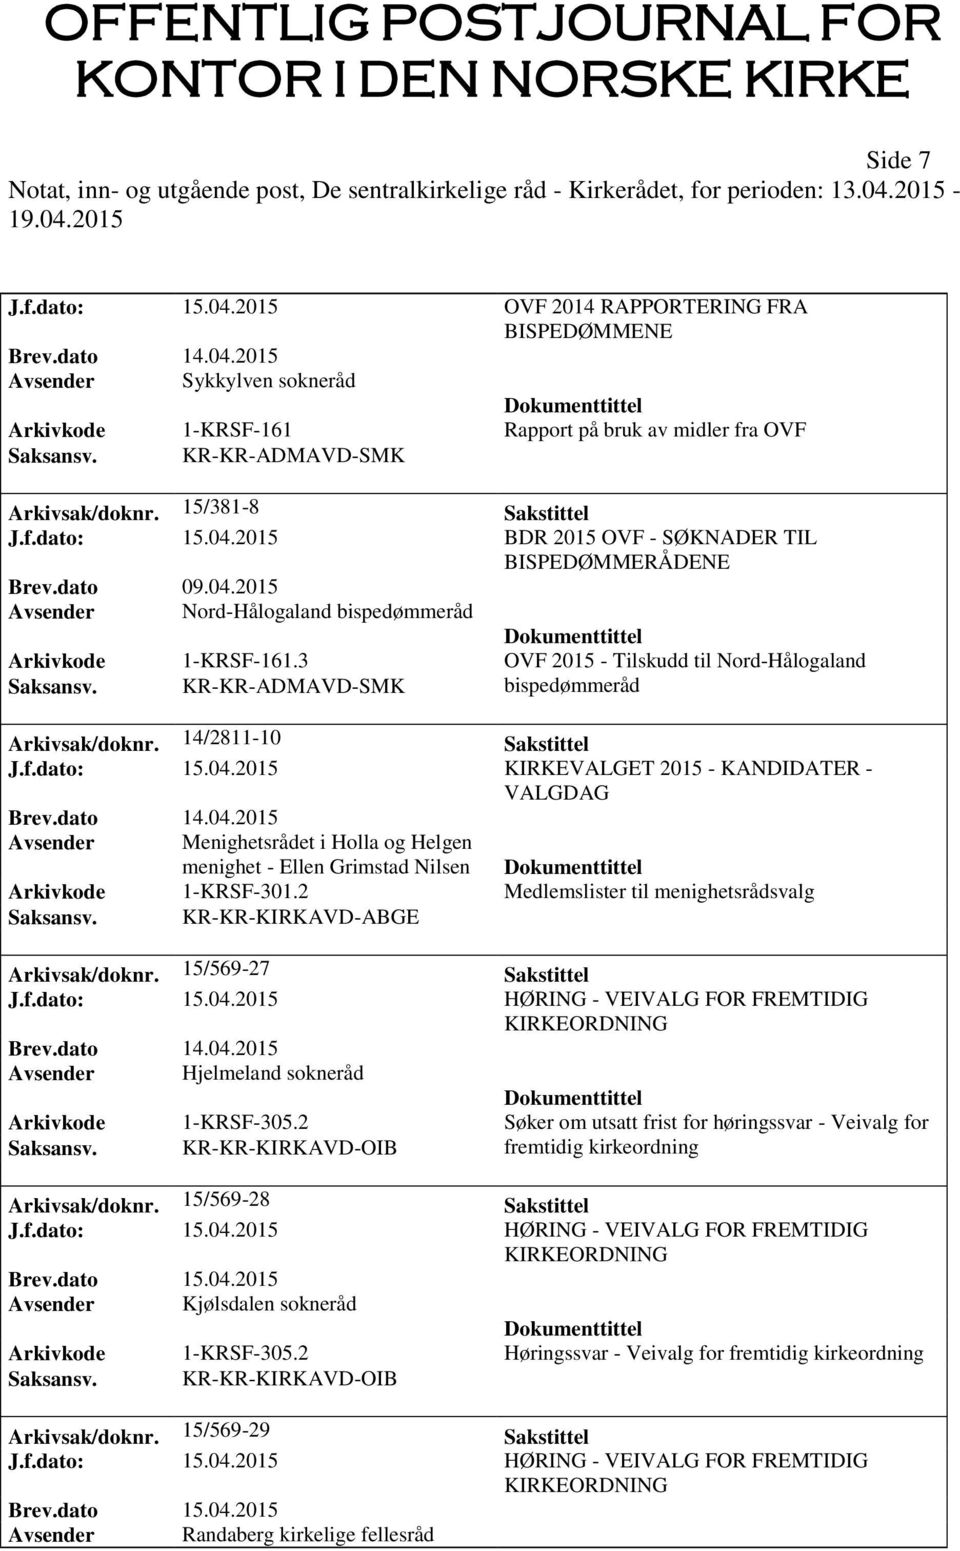 3 OVF 2015 - Tilskudd til Nord-Hålogaland Saksansv. KR-KR-ADMAVD-SMK bispedømmeråd Arkivsak/doknr. 14/2811-10 Sakstittel J.f.dato: 15.04.